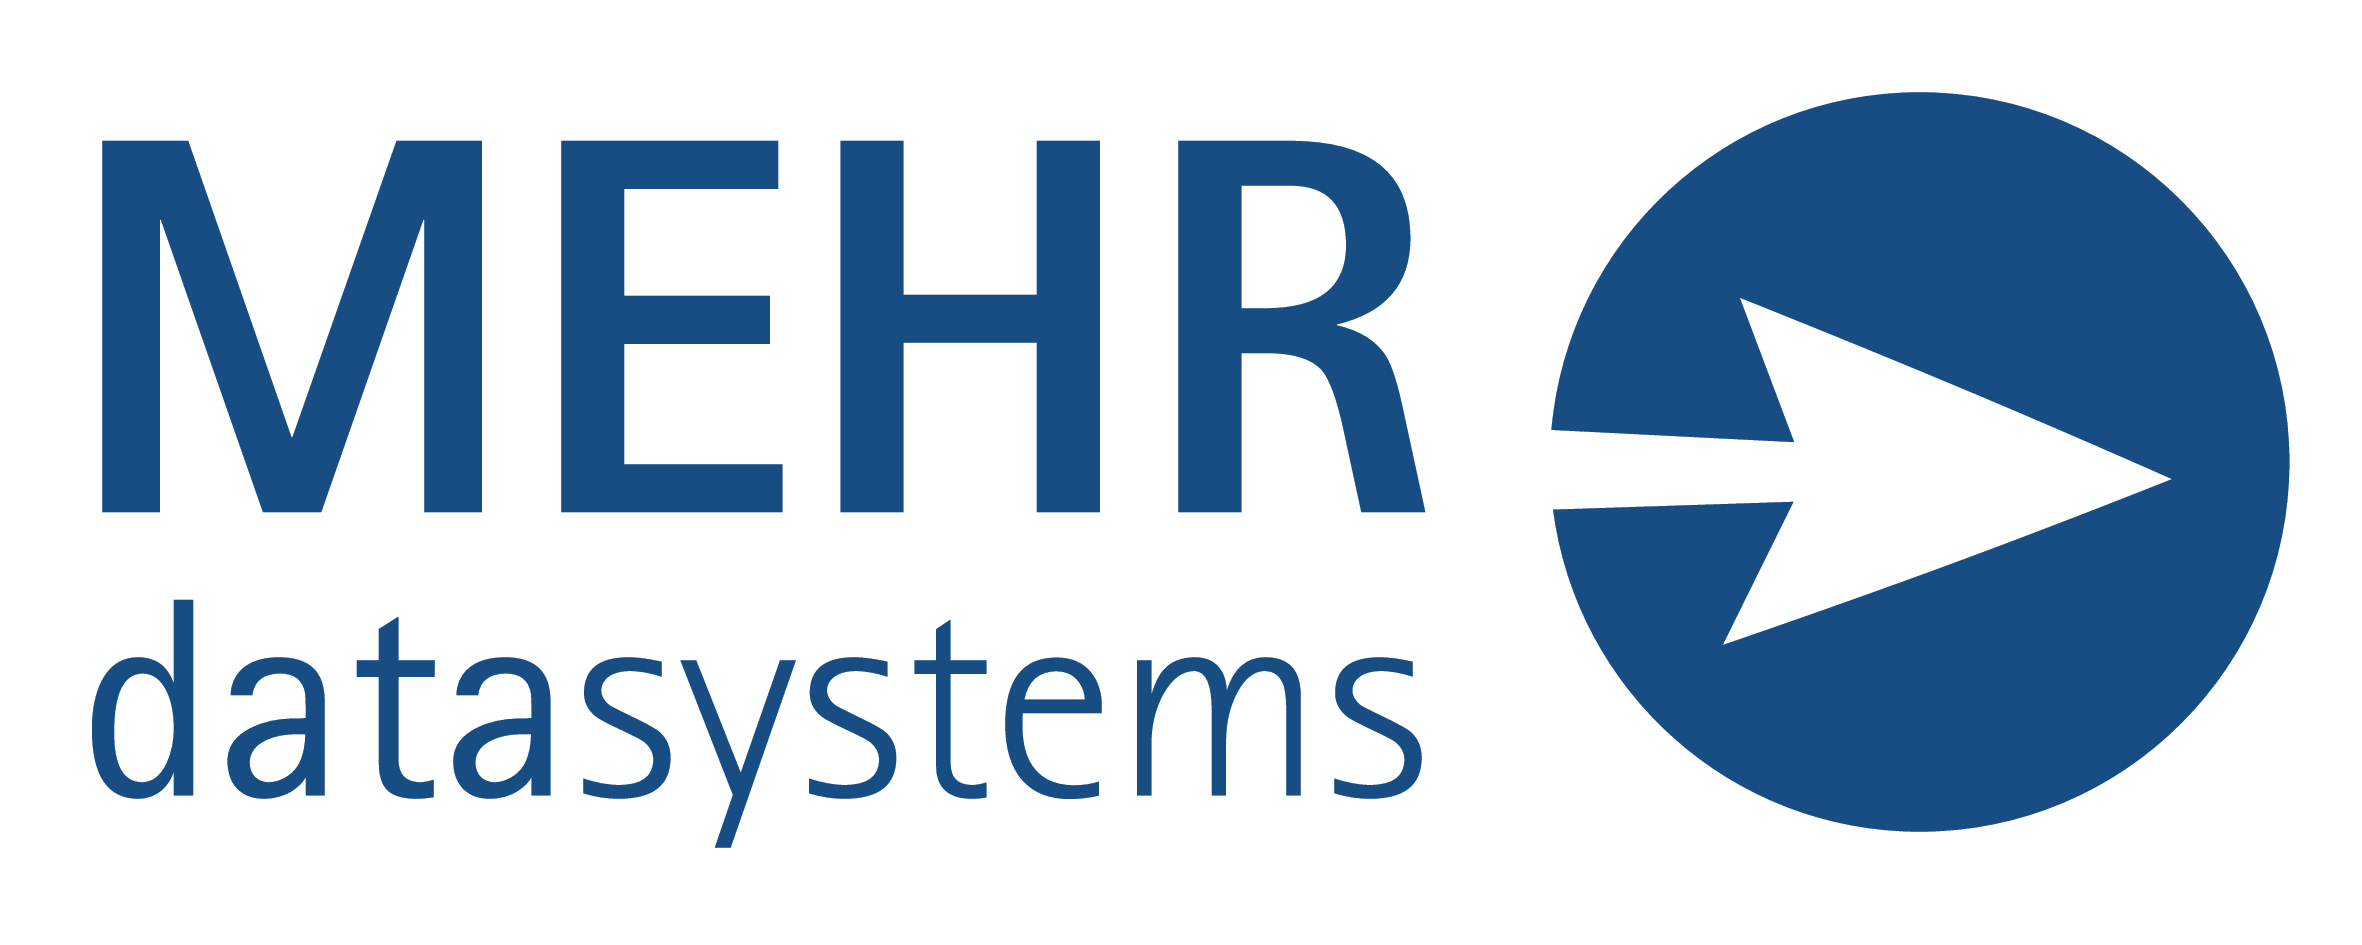 MEHR Datasystems